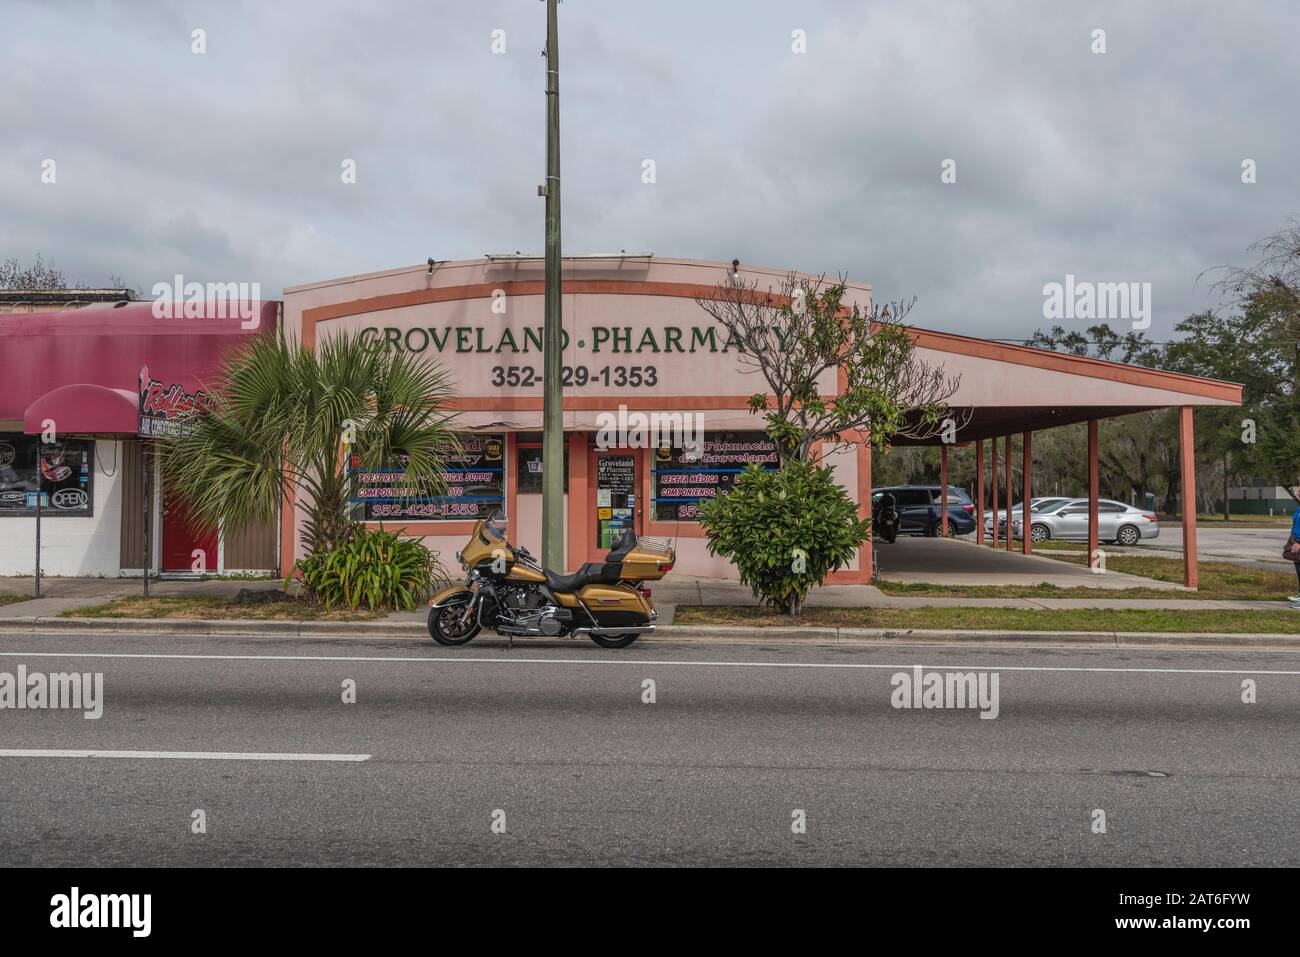 Groveland Pharmacy Storefront, Buena Farmacia Vecina Groveland Florida Estados Unidos Foto de stock